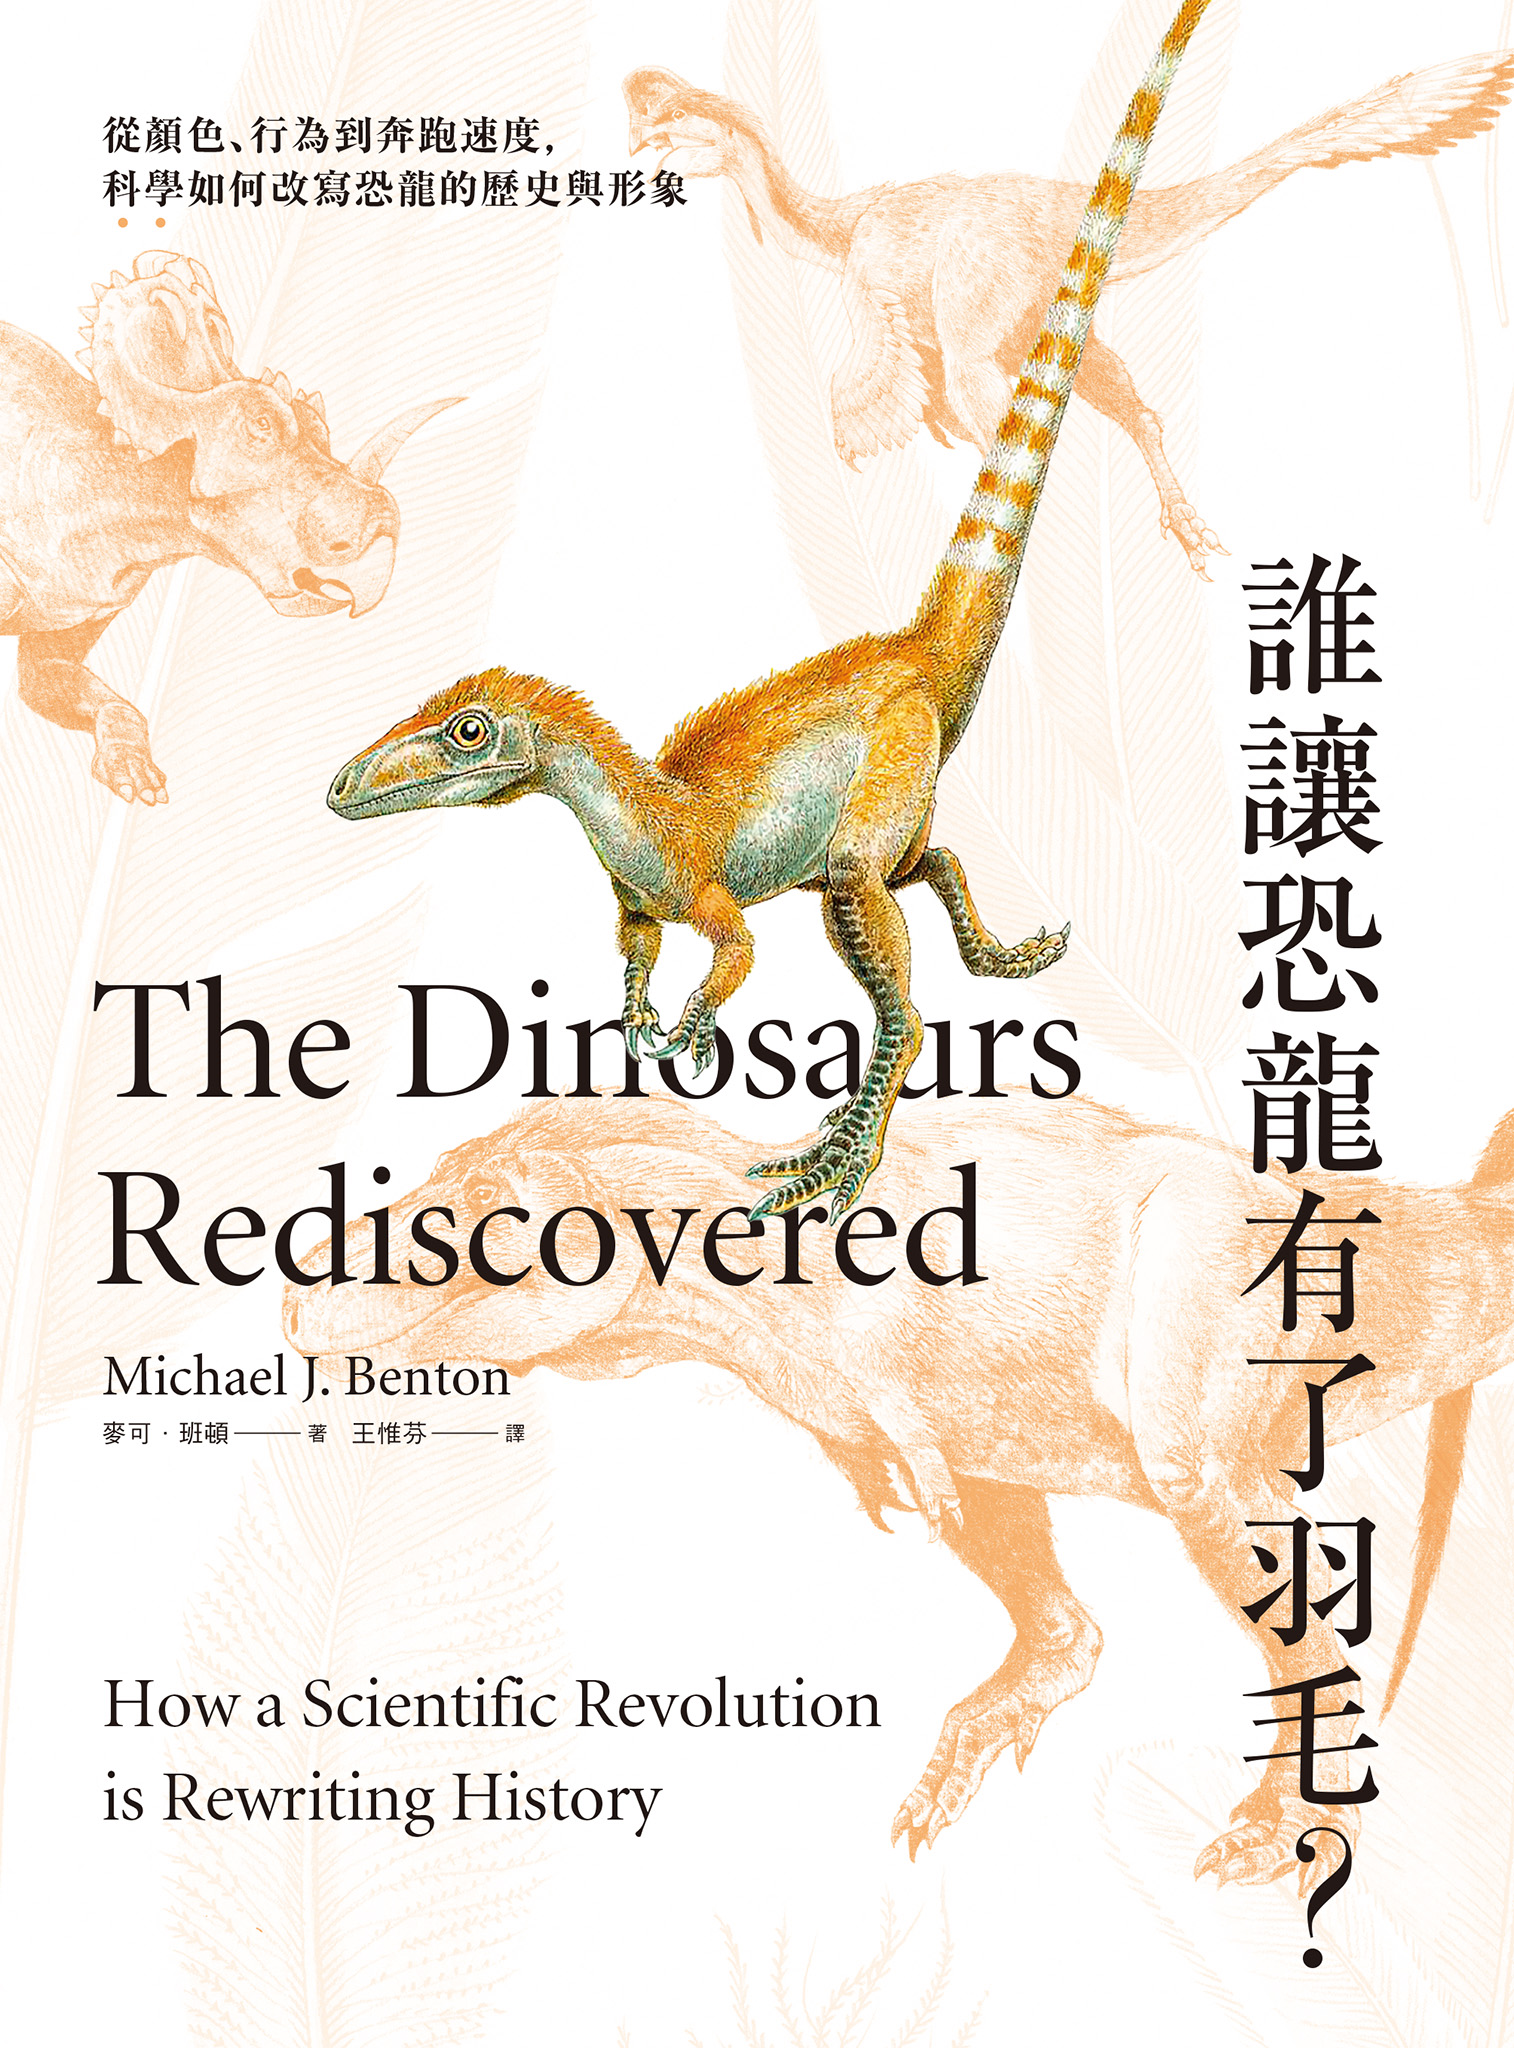 誰讓恐龍有了羽毛？ ：從顏色、行為到奔跑速度，科學如何改寫恐龍的歷史與形象